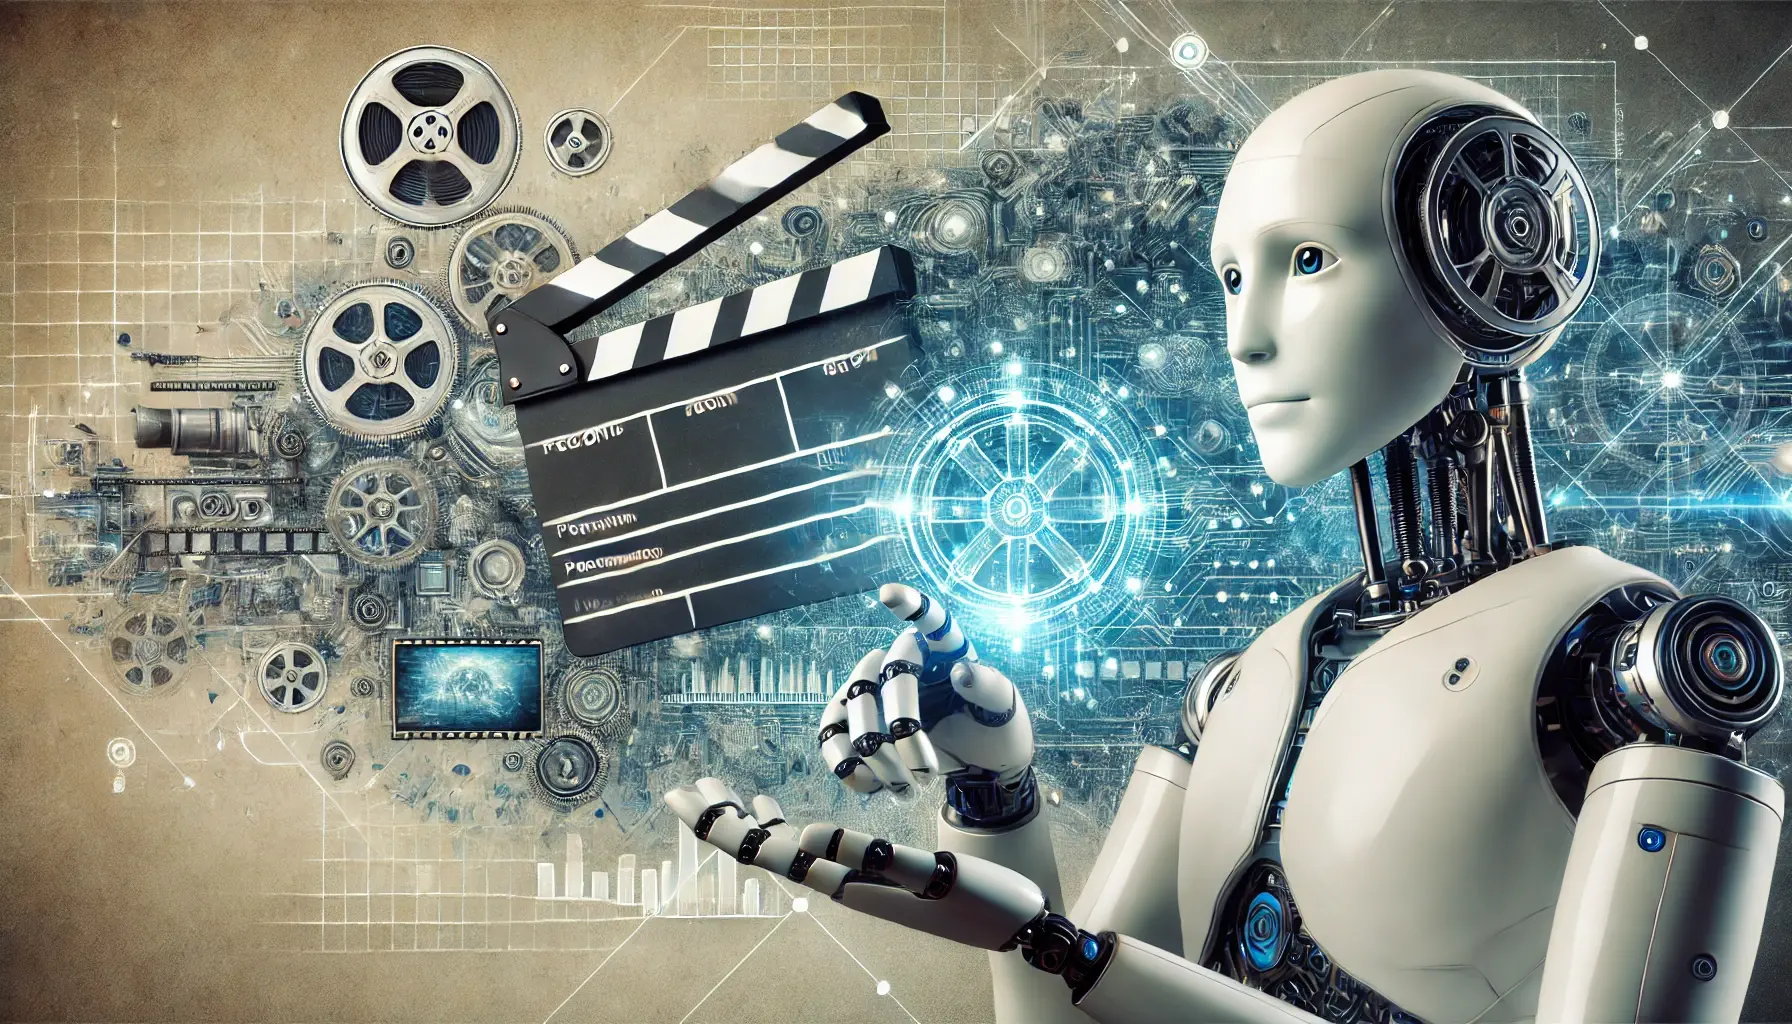 IA da OpenAI abala Hollywood com promessa de revolução na indústria do cinema

A indústria do cinema está sempre em busca de inovações tecnológicas que possam melhorar a forma como os filmes são produzidos, promovidos e consumidos. Nos últimos anos, a inteligência artificial (IA) tem se destacado como uma das ferramentas mais promissoras nesse sentido, e a OpenAI tem sido uma das empresas líderes nesse campo. Com sua tecnologia de ponta, a OpenAI promete revolucionar o cinema, trazendo novas possibilidades e desafios para Hollywood e para os cineastas em geral.